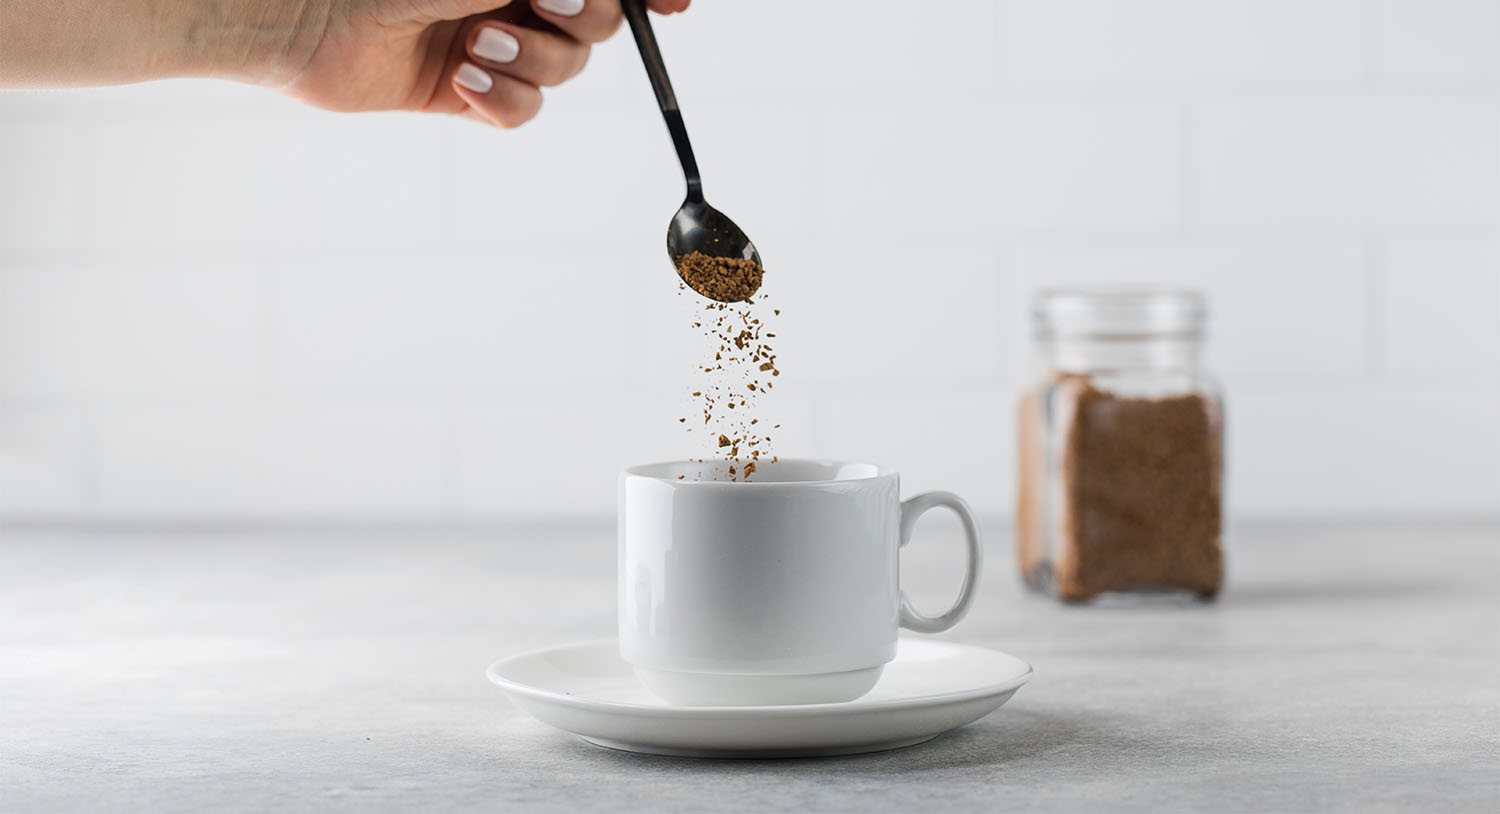 biała-filiżanka-kawy-kawa-rozpuszczalna-przygotowywanie-gorącego-napoju-poranna-kawa